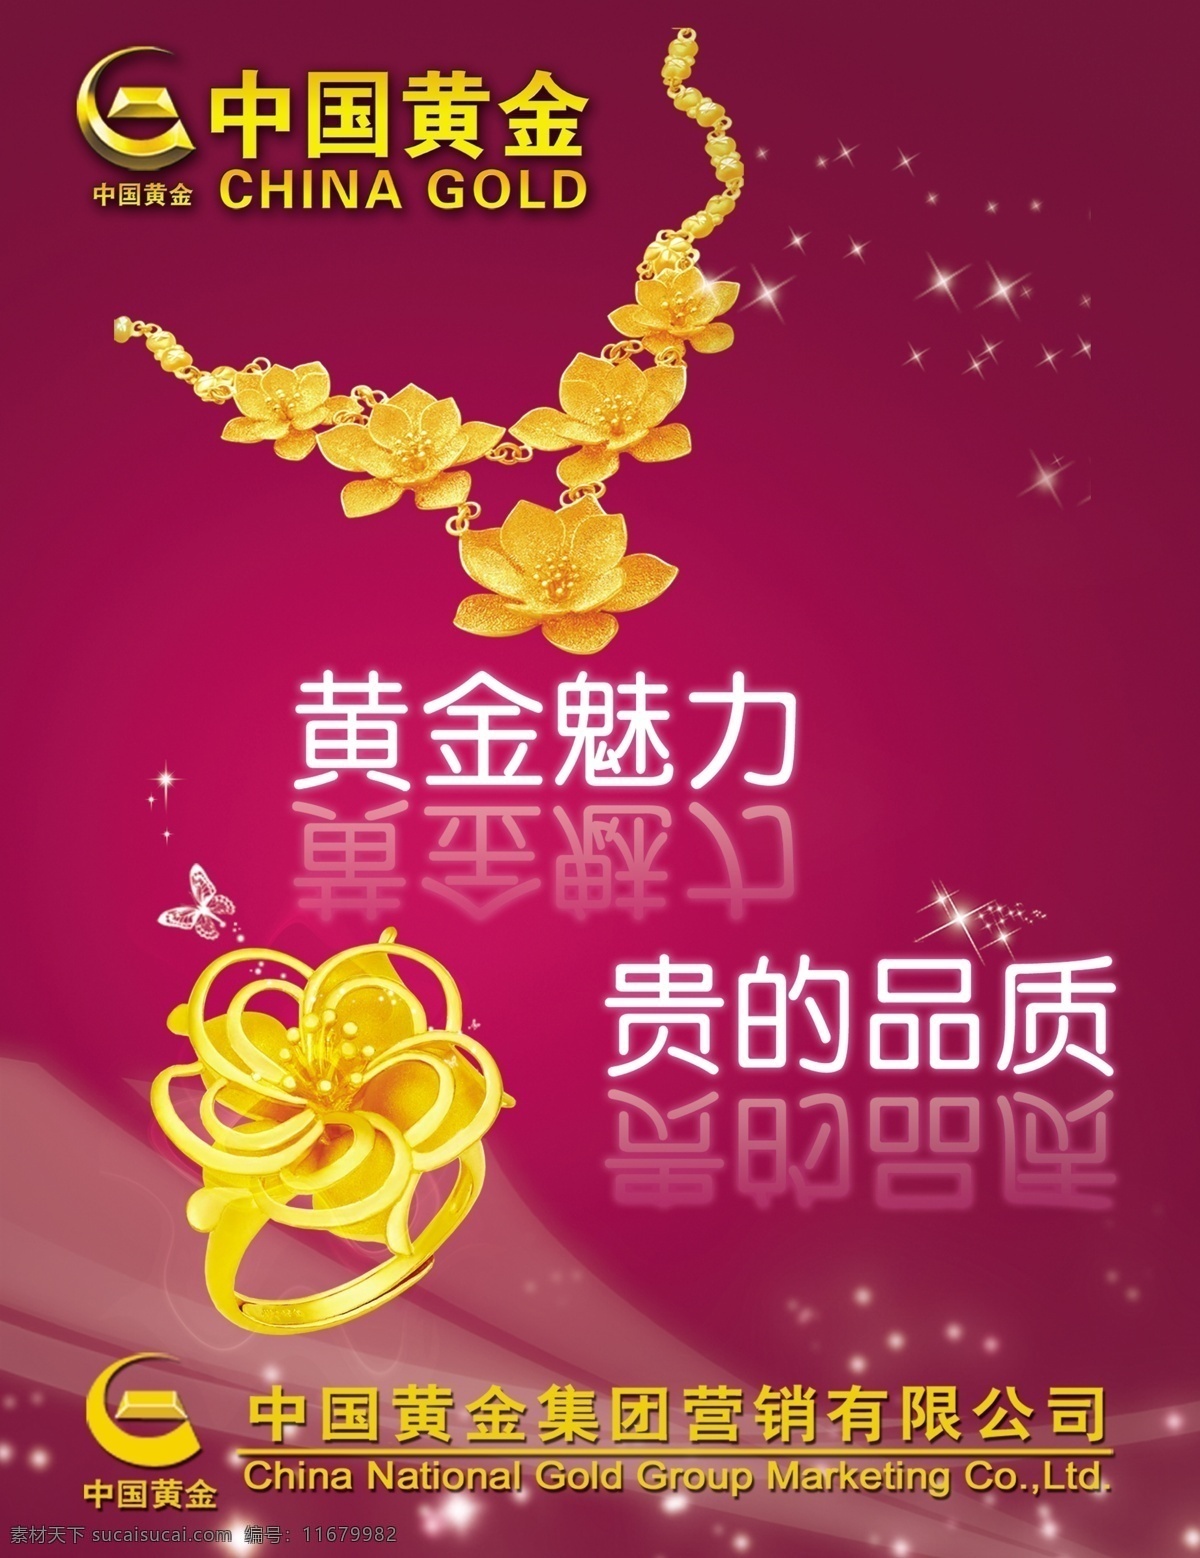 中国黄金海报 中国黄金 公司海报 海报 金首饰 饰品 戒指 项链 广告设计模板 源文件